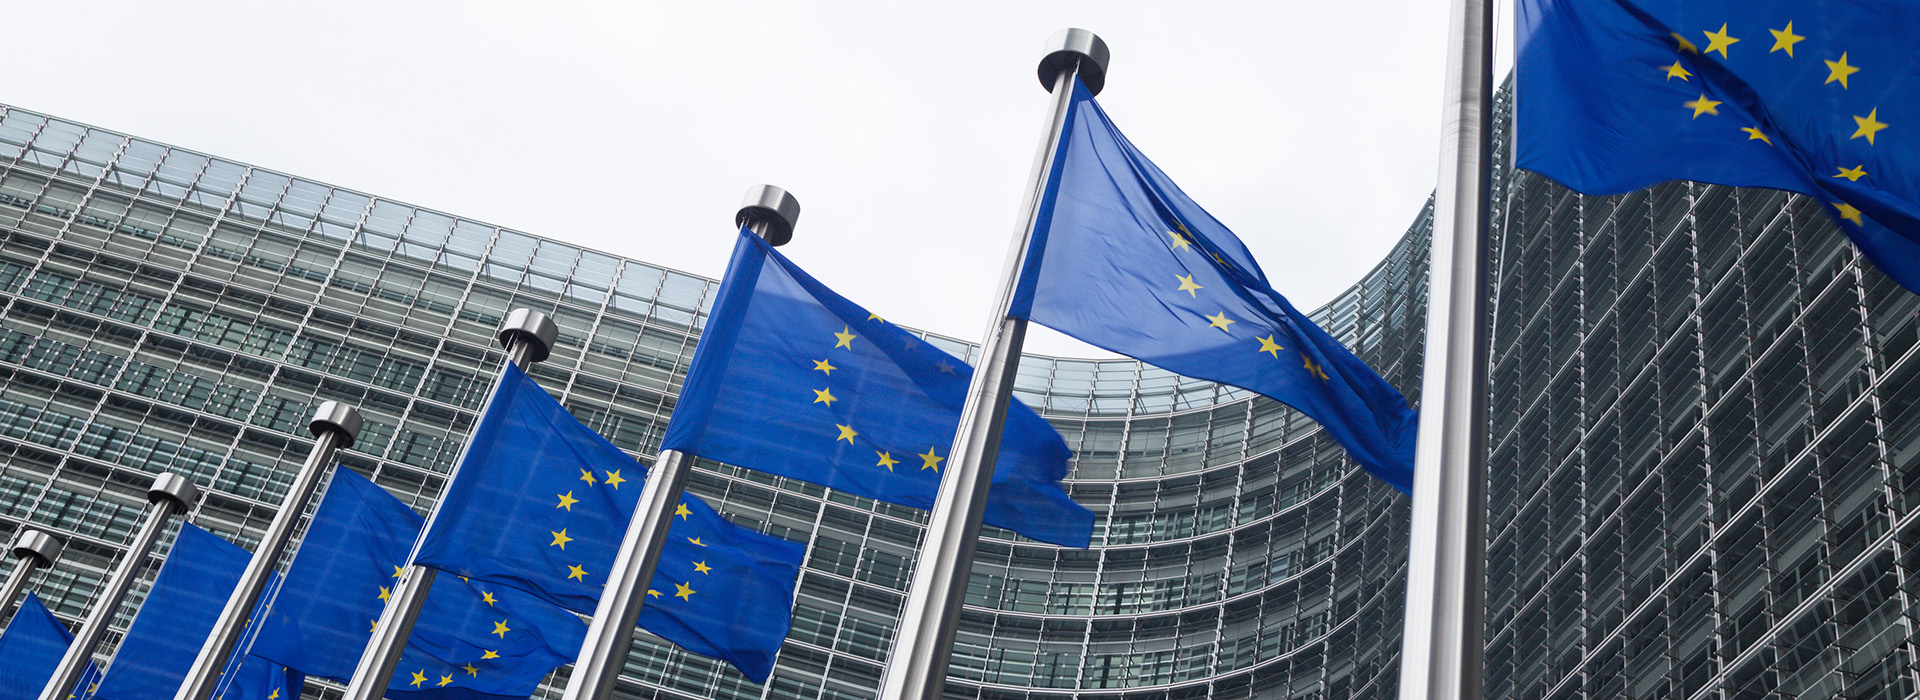 Flaggen der Europäischen Union vor dem Hauptsitz der Europäischen Kommission in Brüssel (Belgien) (Bild: Rachele Rossi / GettyImages)